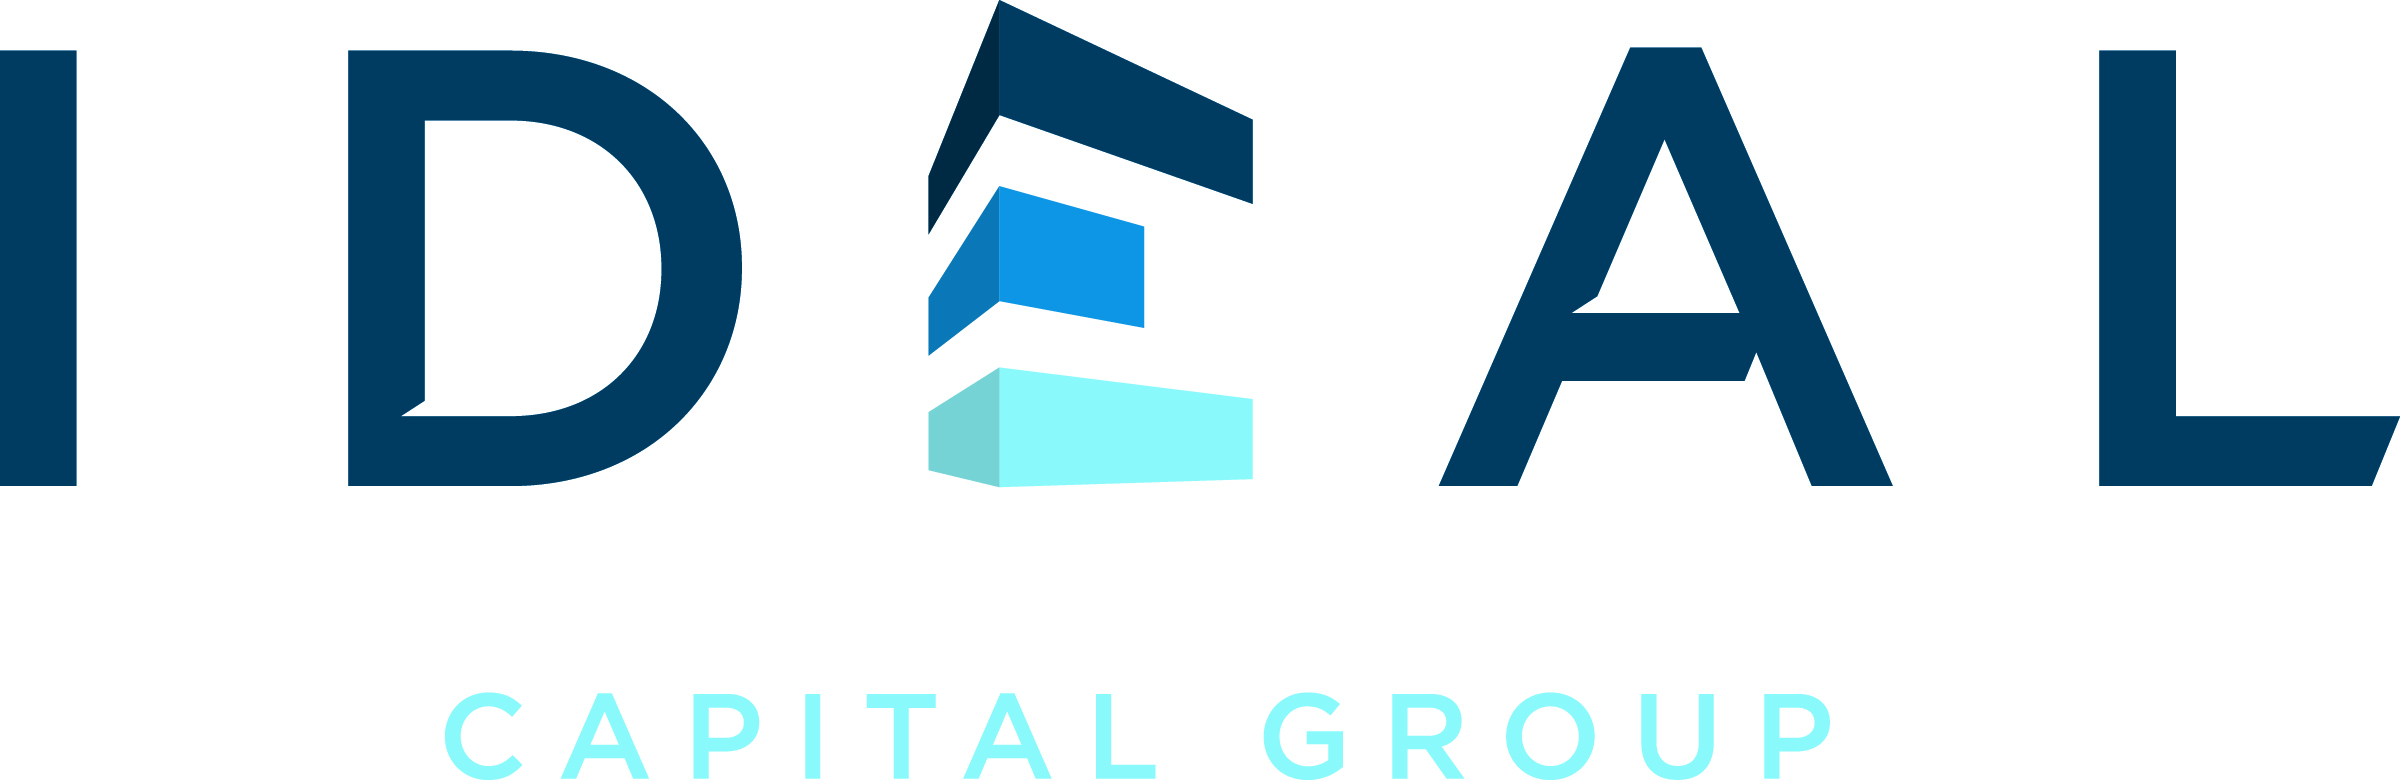 Ideal Capital Group Logo CMYK